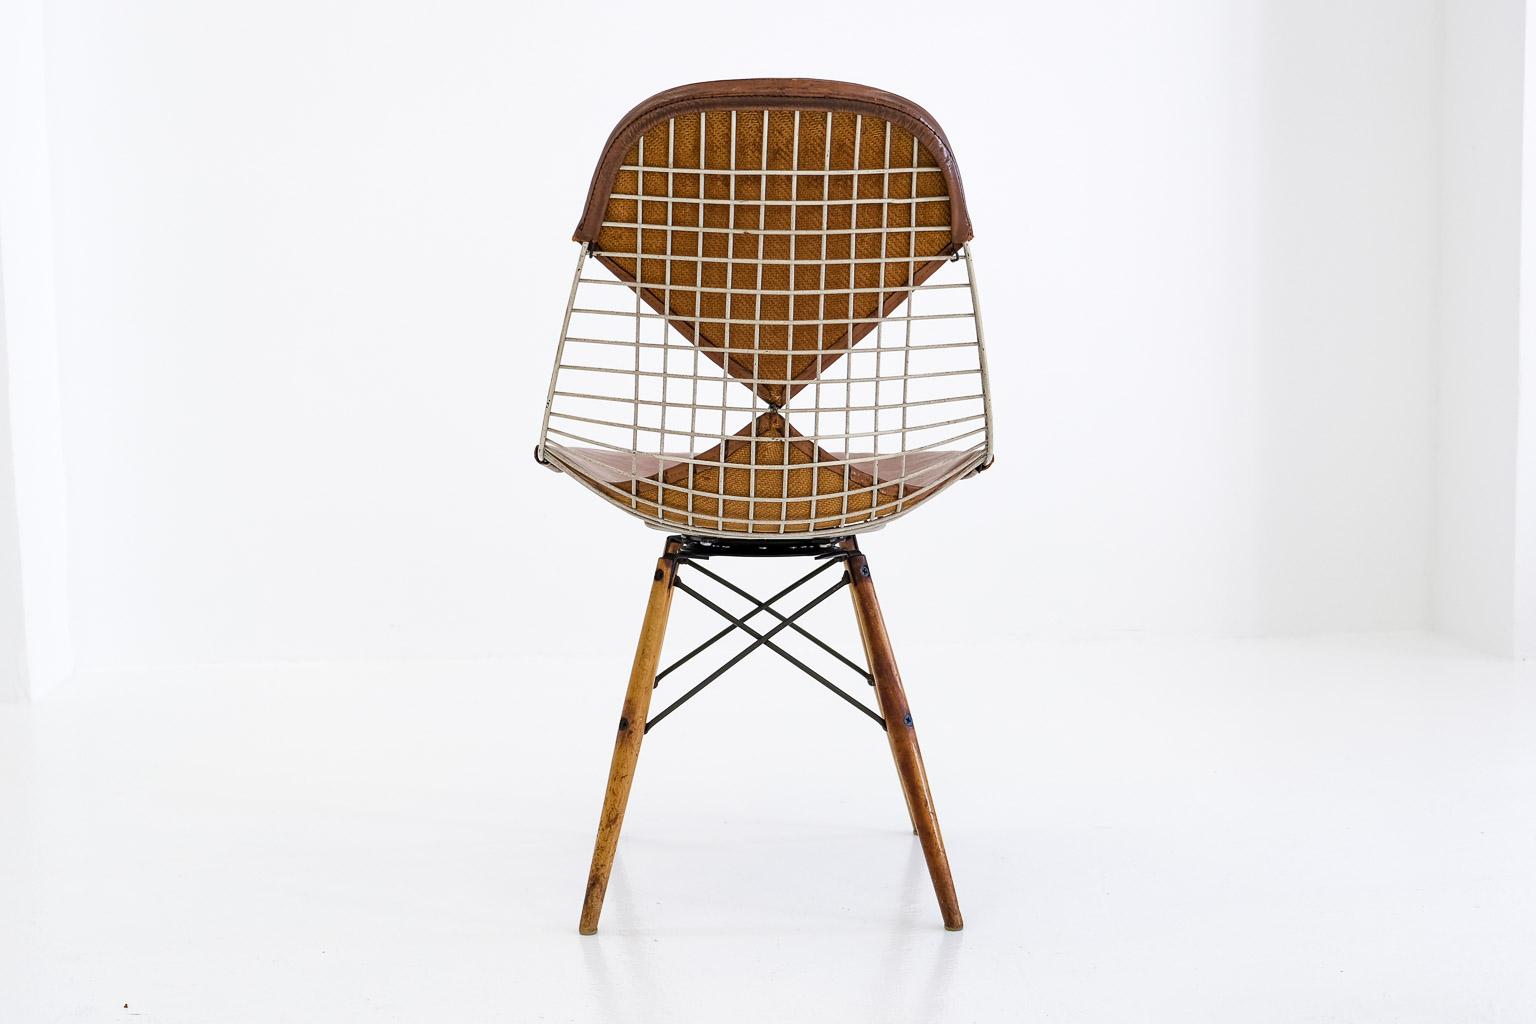 Pkw-2 Pivoting K-Wire Wood Base Side Chair, Eames Herman Miller, Bikini, Seng For Sale 1